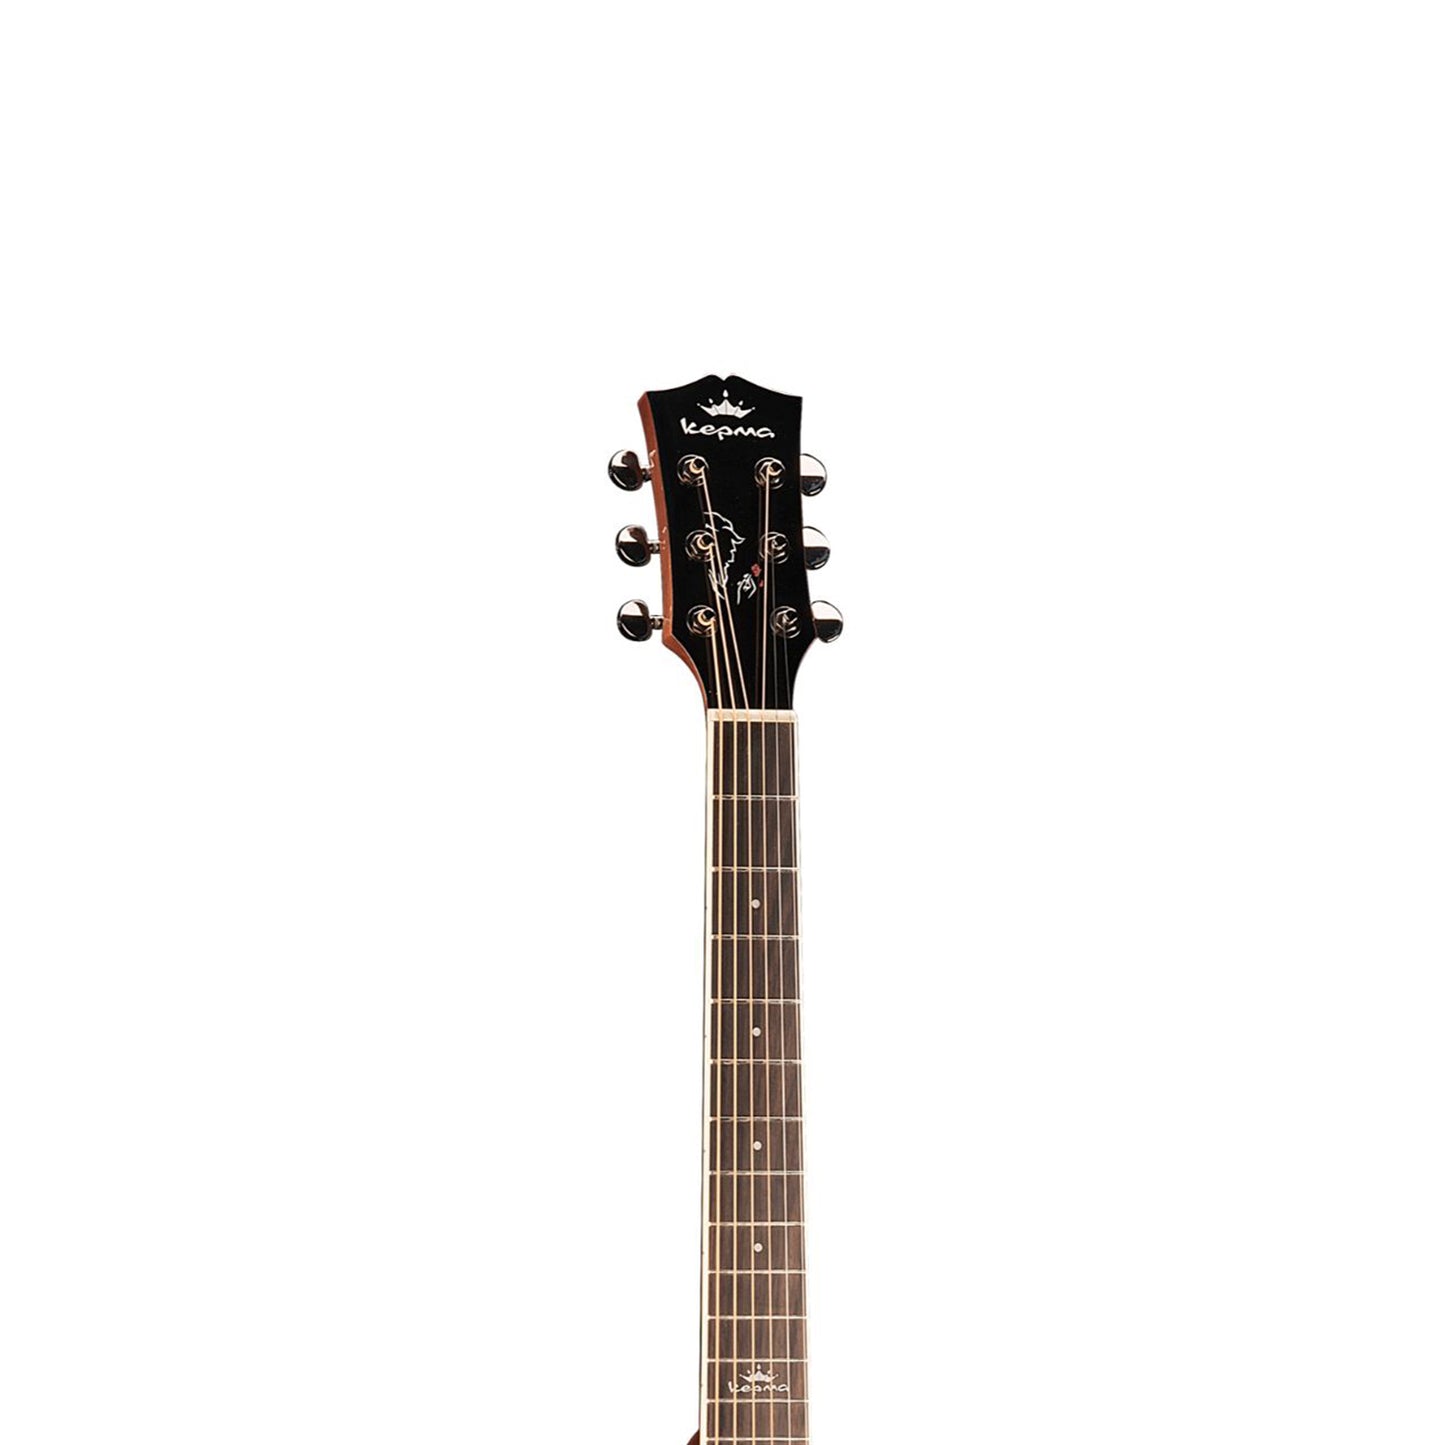 Kepma D1CE - Semi Acoustic Guitar- Sunburst Gloss